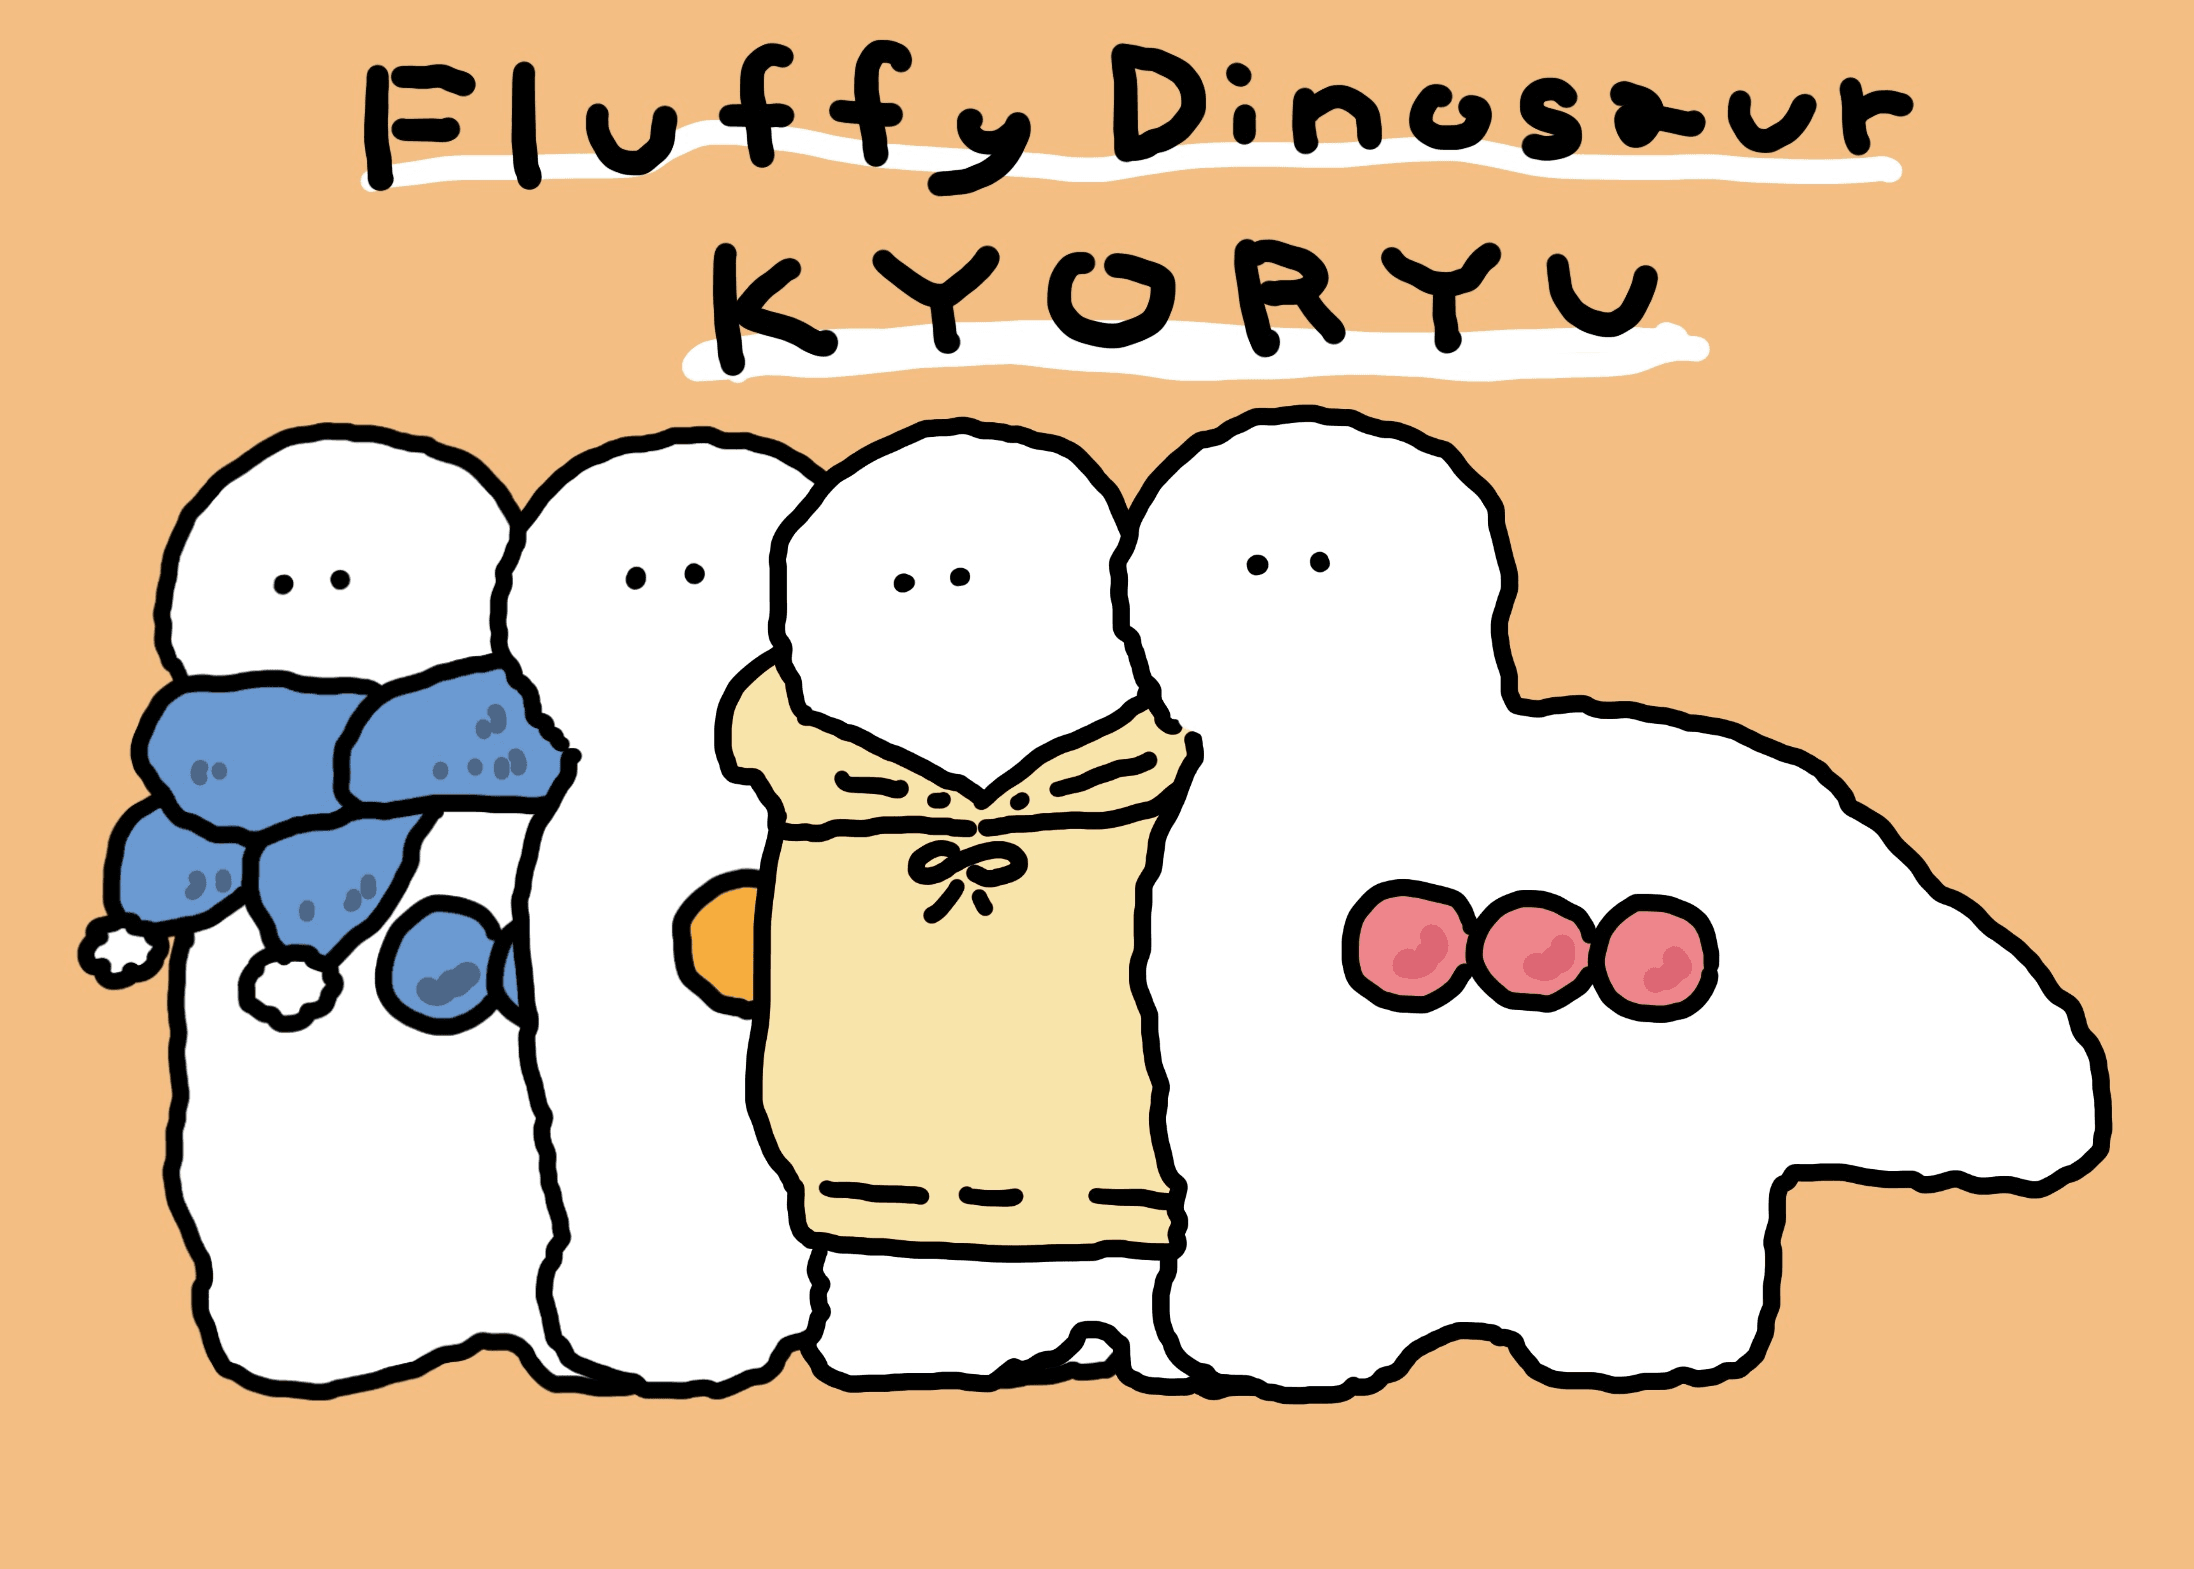 Fluffy Dinosaur KYORYU